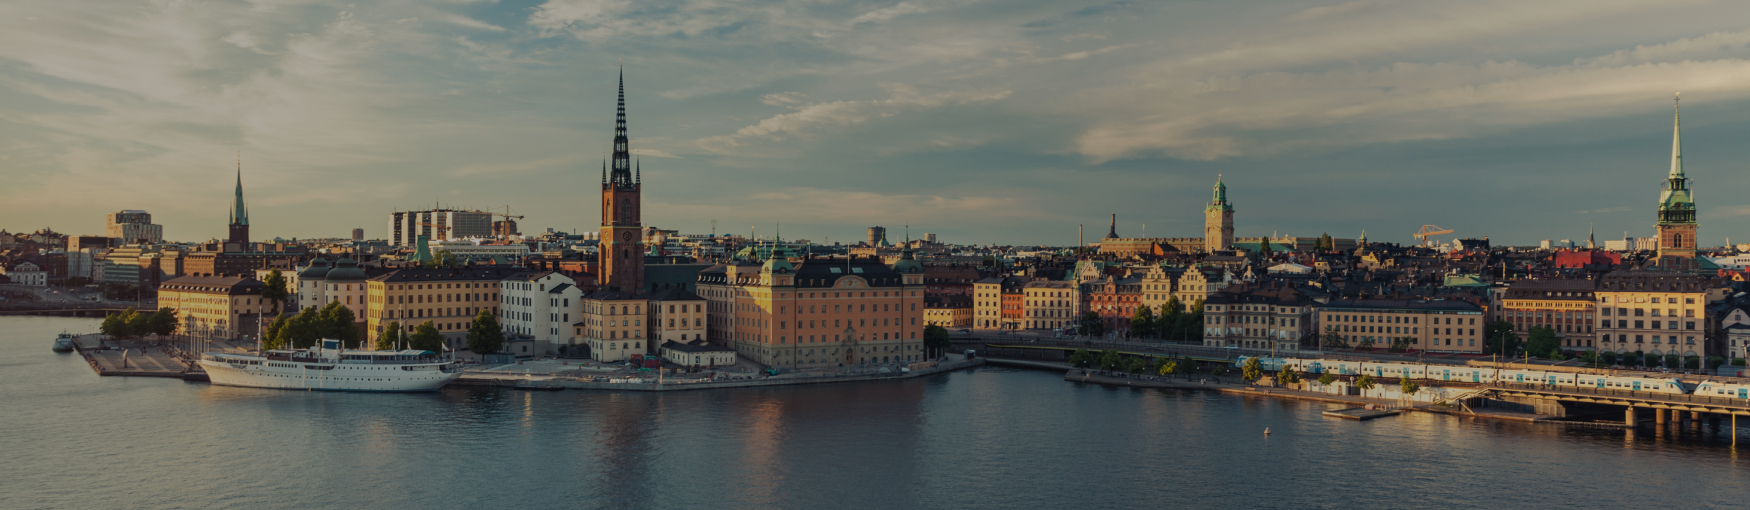 Szwecja - Sztokholm